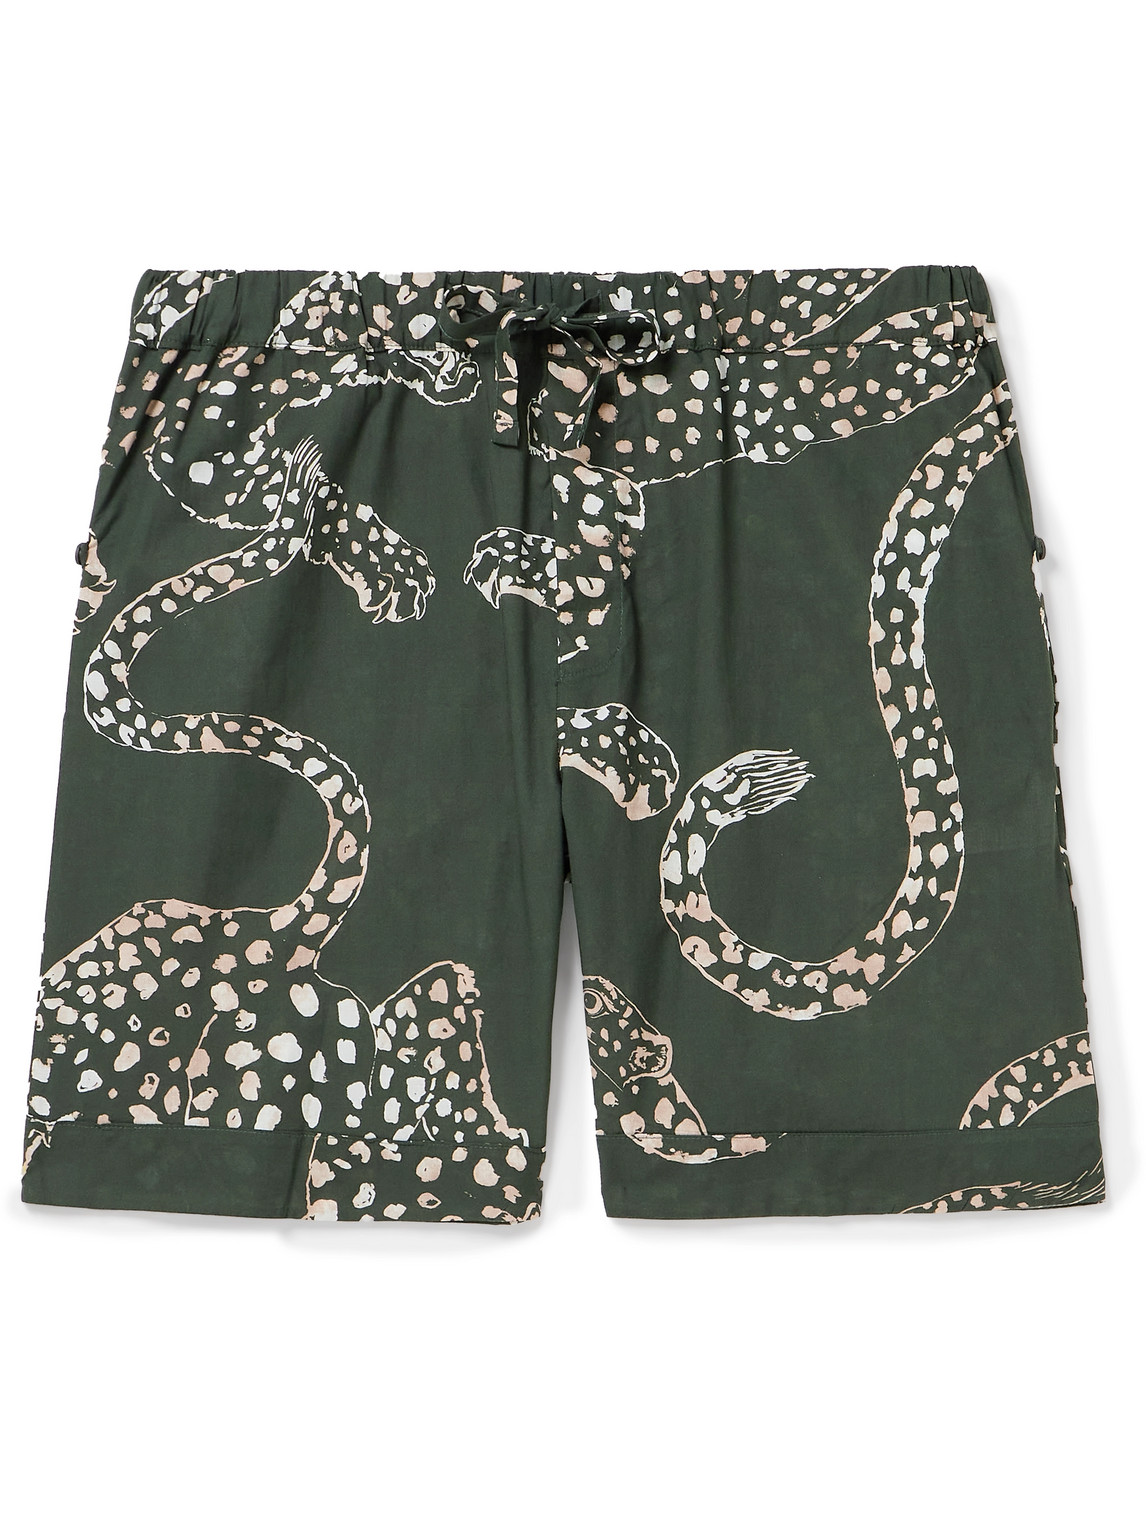 Desmond & Dempsey - Printed Cotton Pyjama Shorts - Men - Green - XL von Desmond & Dempsey